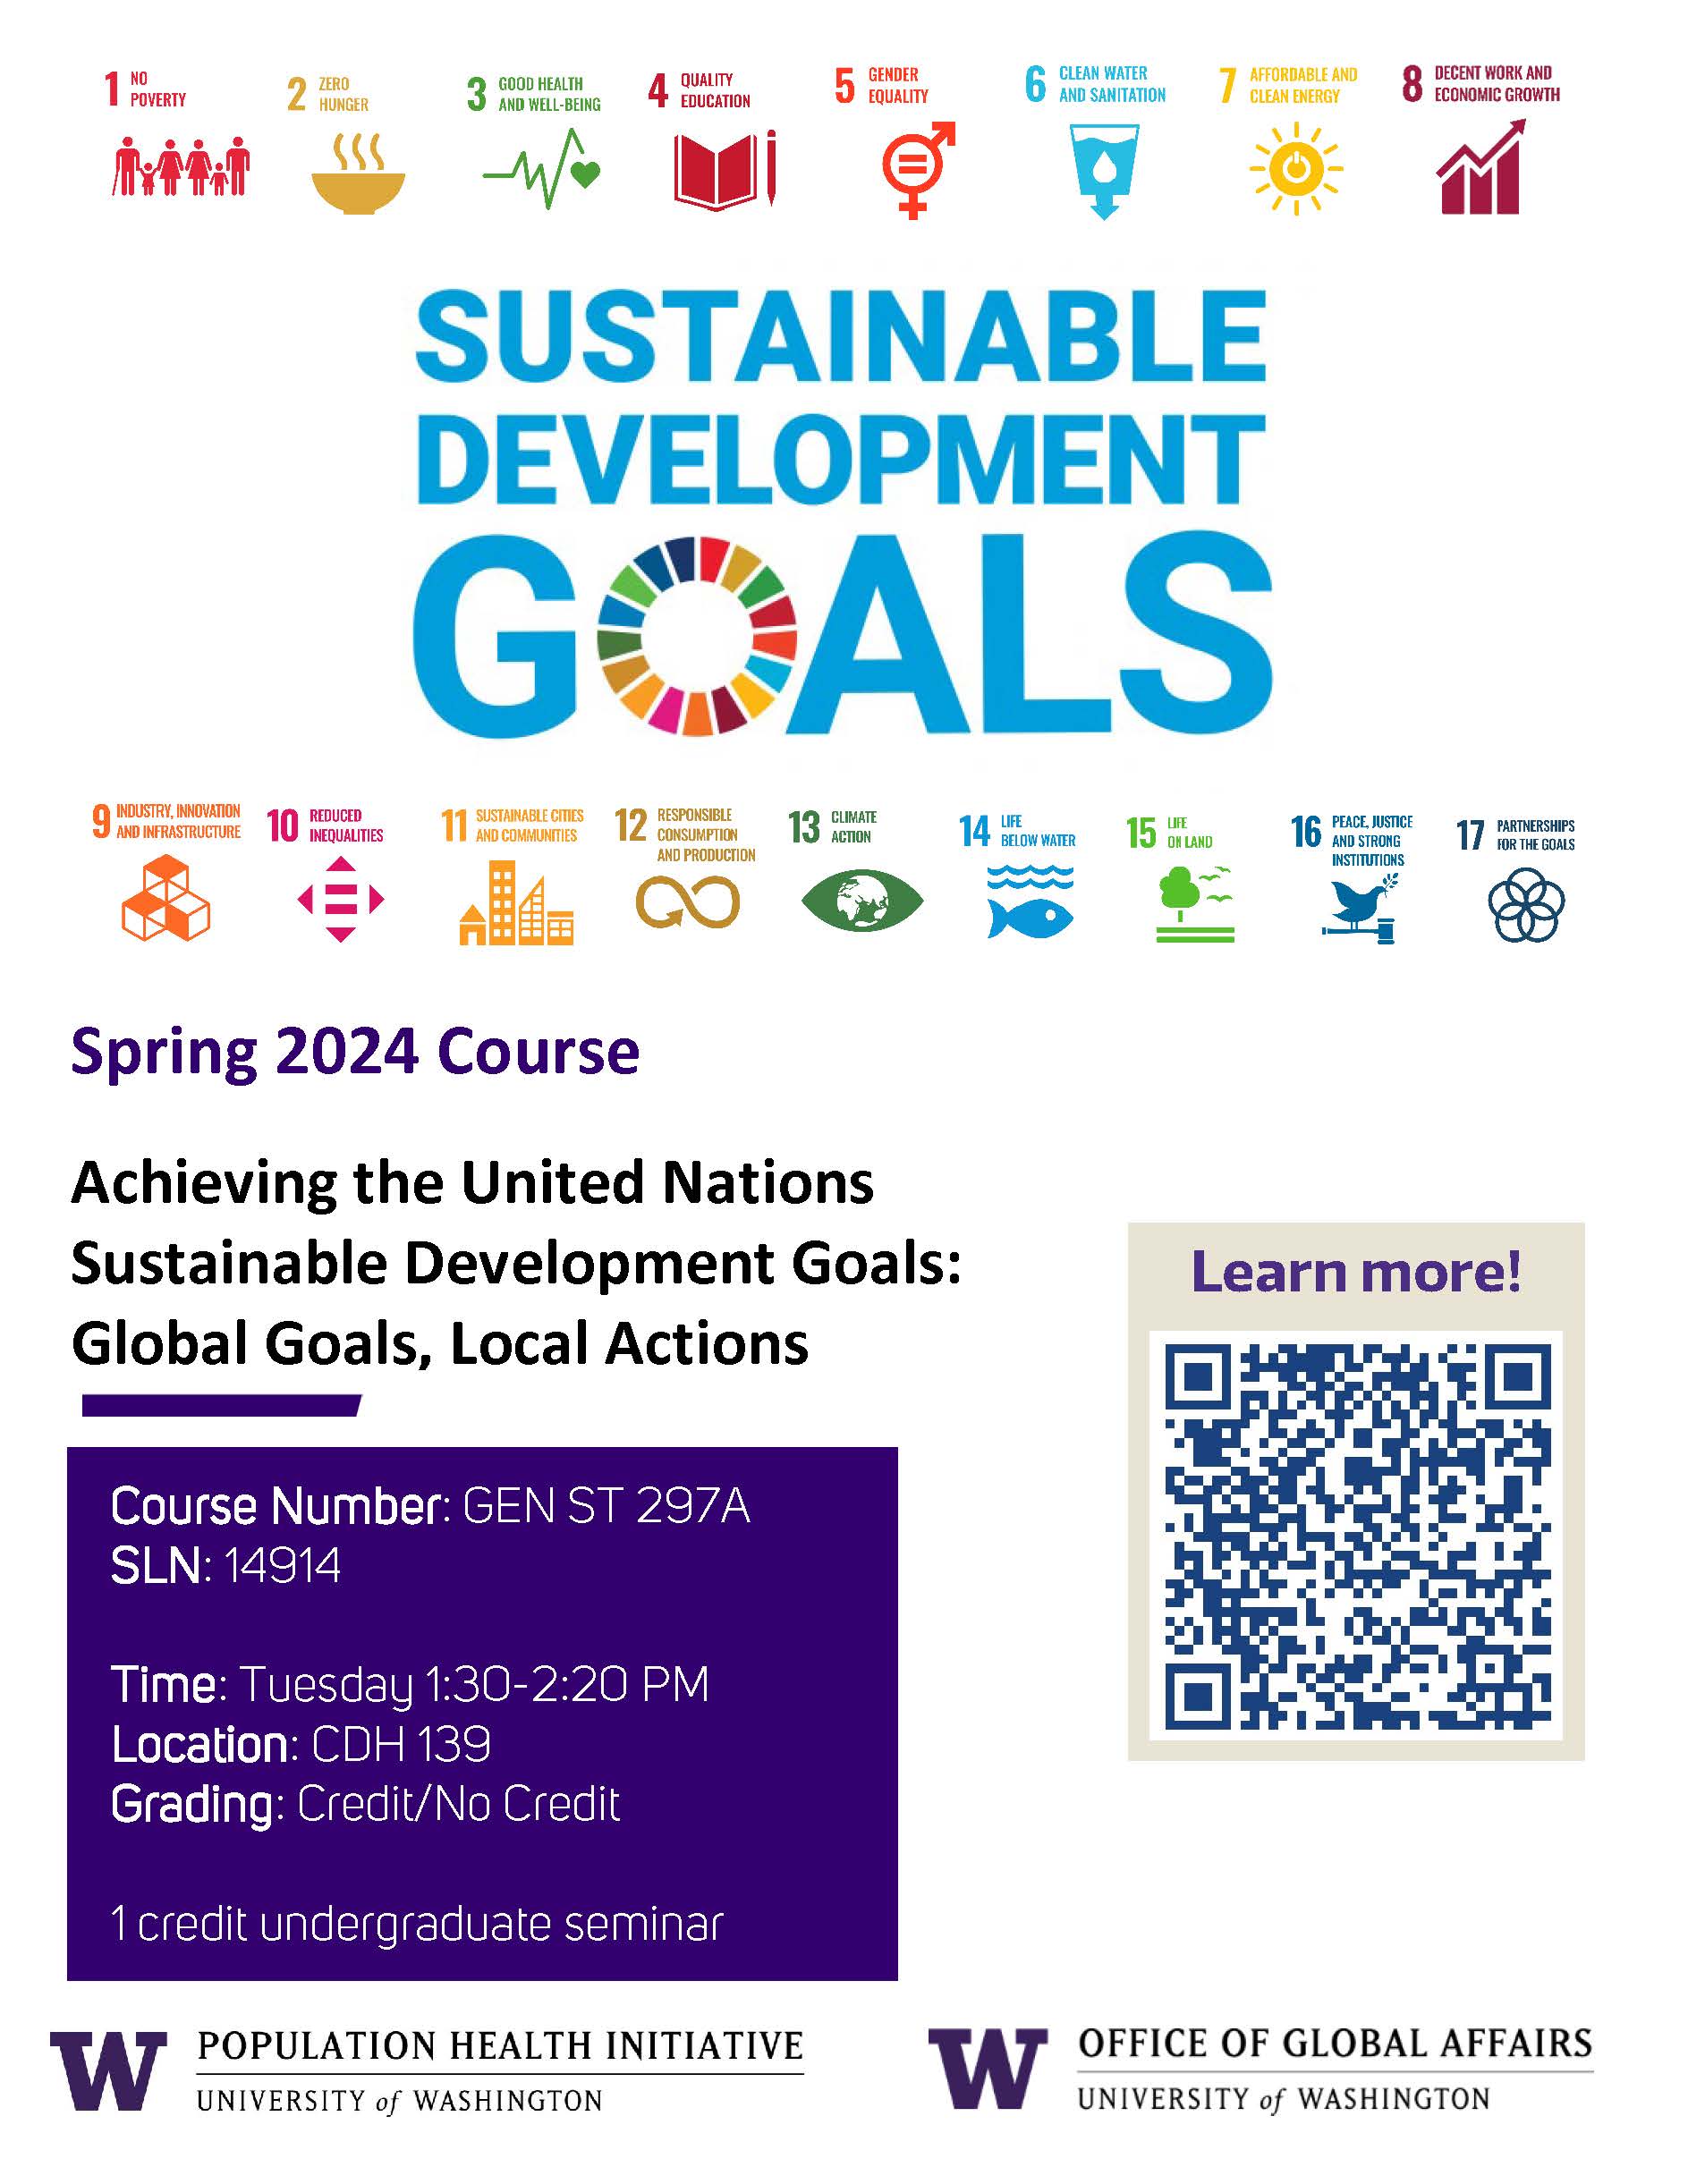 Spring 2024 UN SDGs Course Flyer